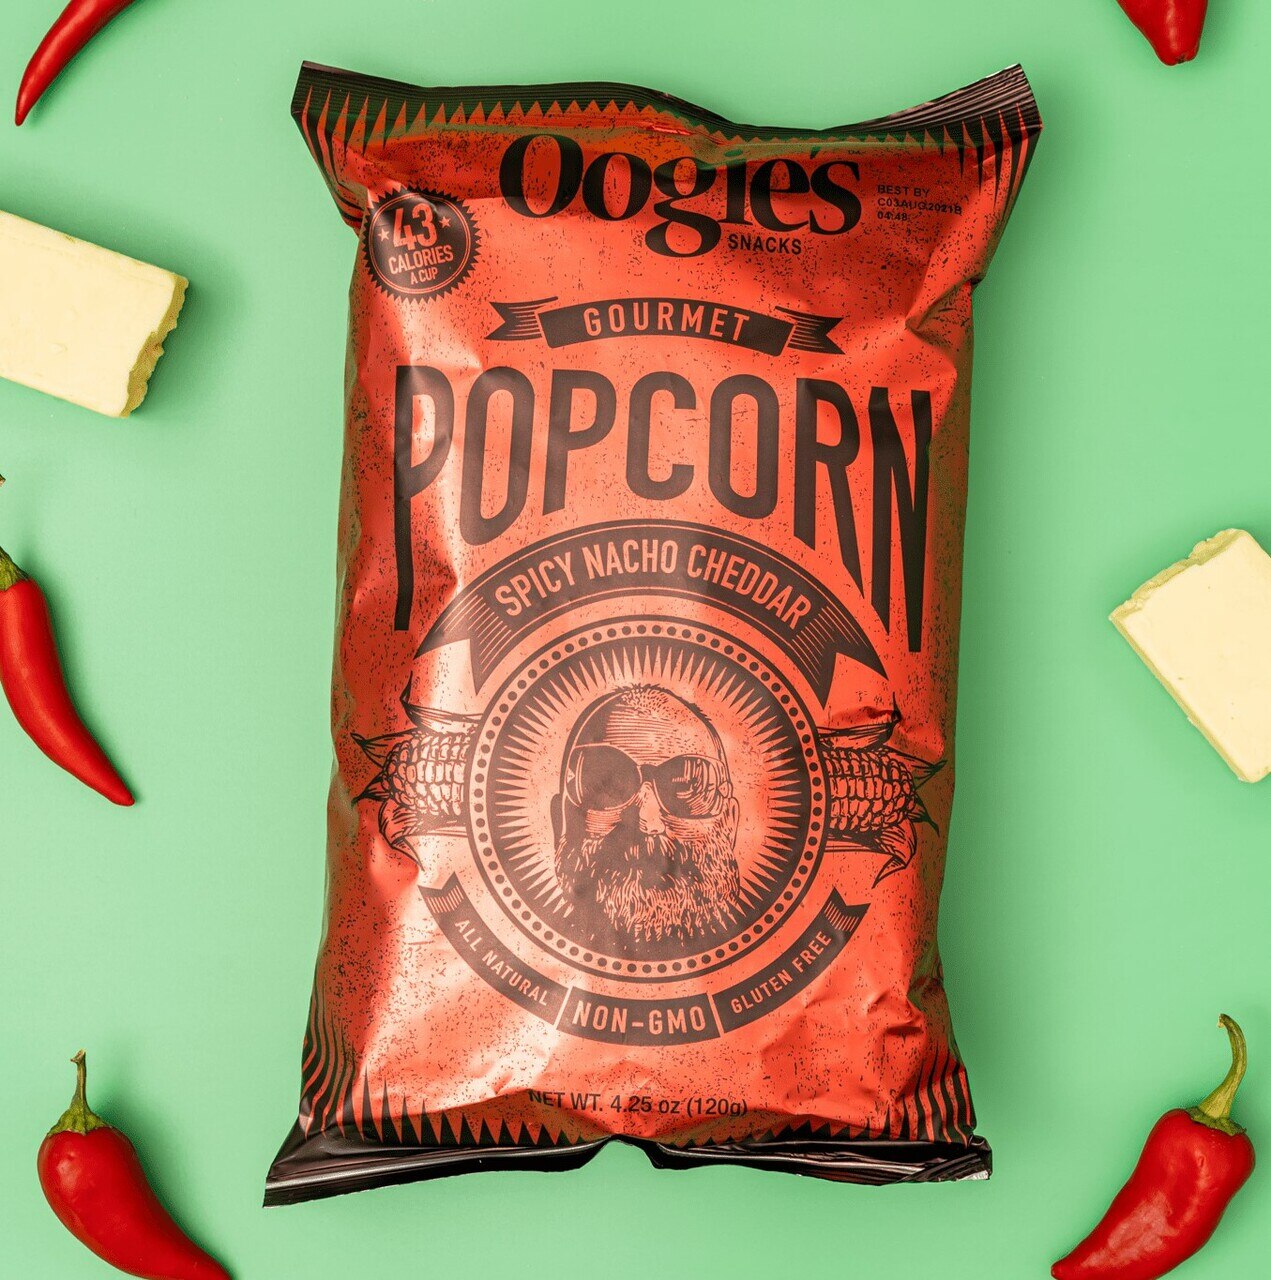 Spicy nacho cheddar gourmet popcorn bag